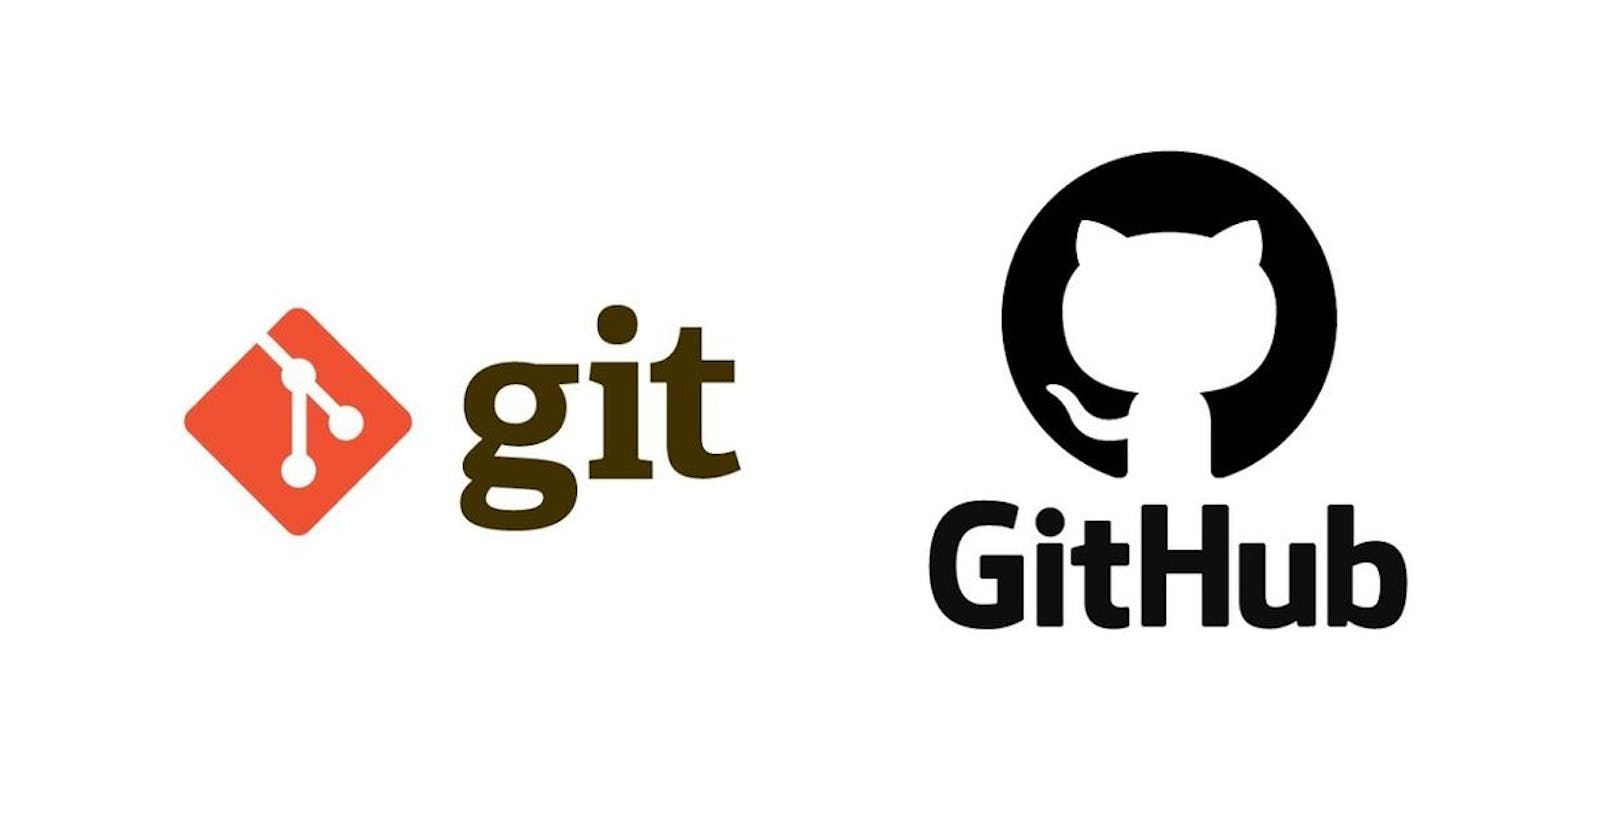 Git vs Github